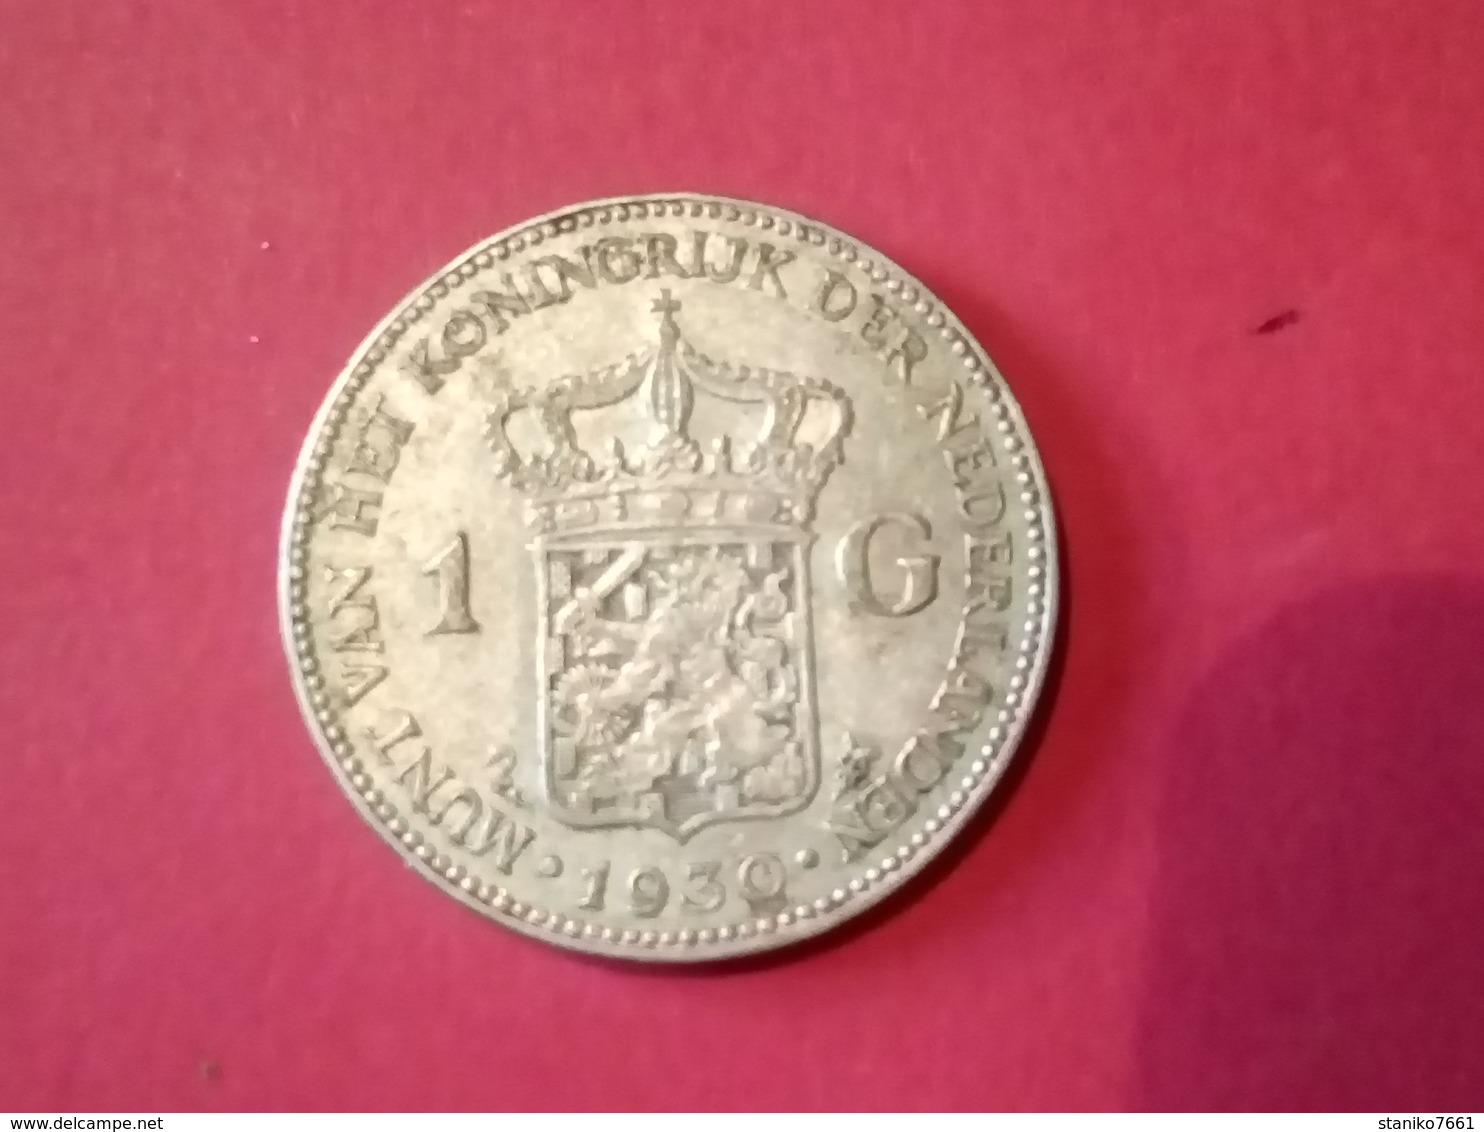 1930 ARGENT Netherlands 1 Gulden - Royal / Of Nobility